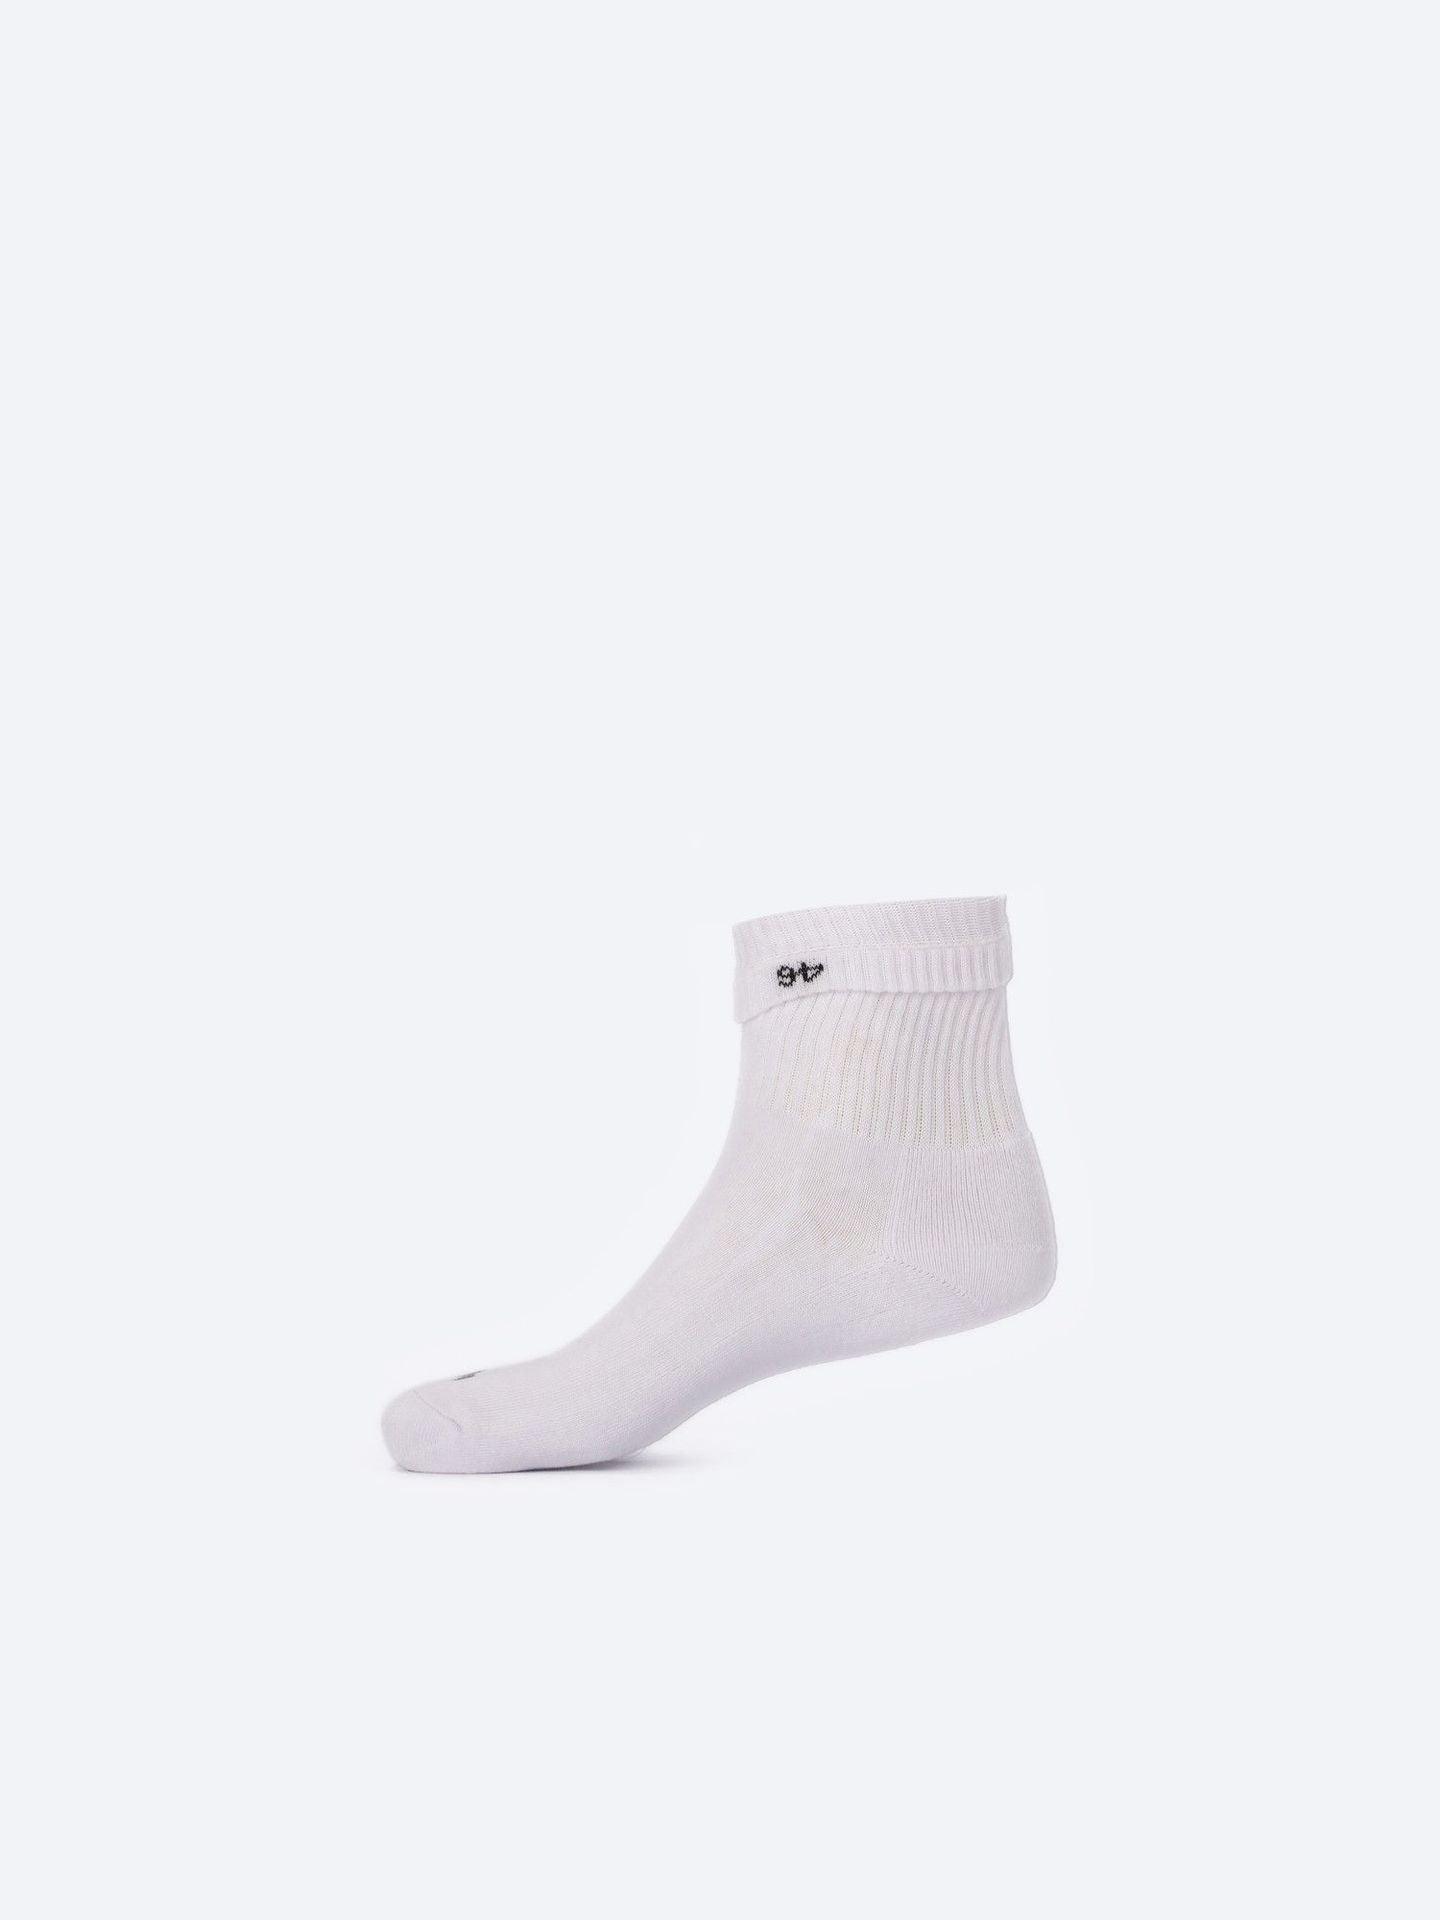 Photo by ð—”ð—§ð—¨ð— SPORTSWEAR Â® on December 26, 2022. May be kid's white mid-crew training socks with atum logo